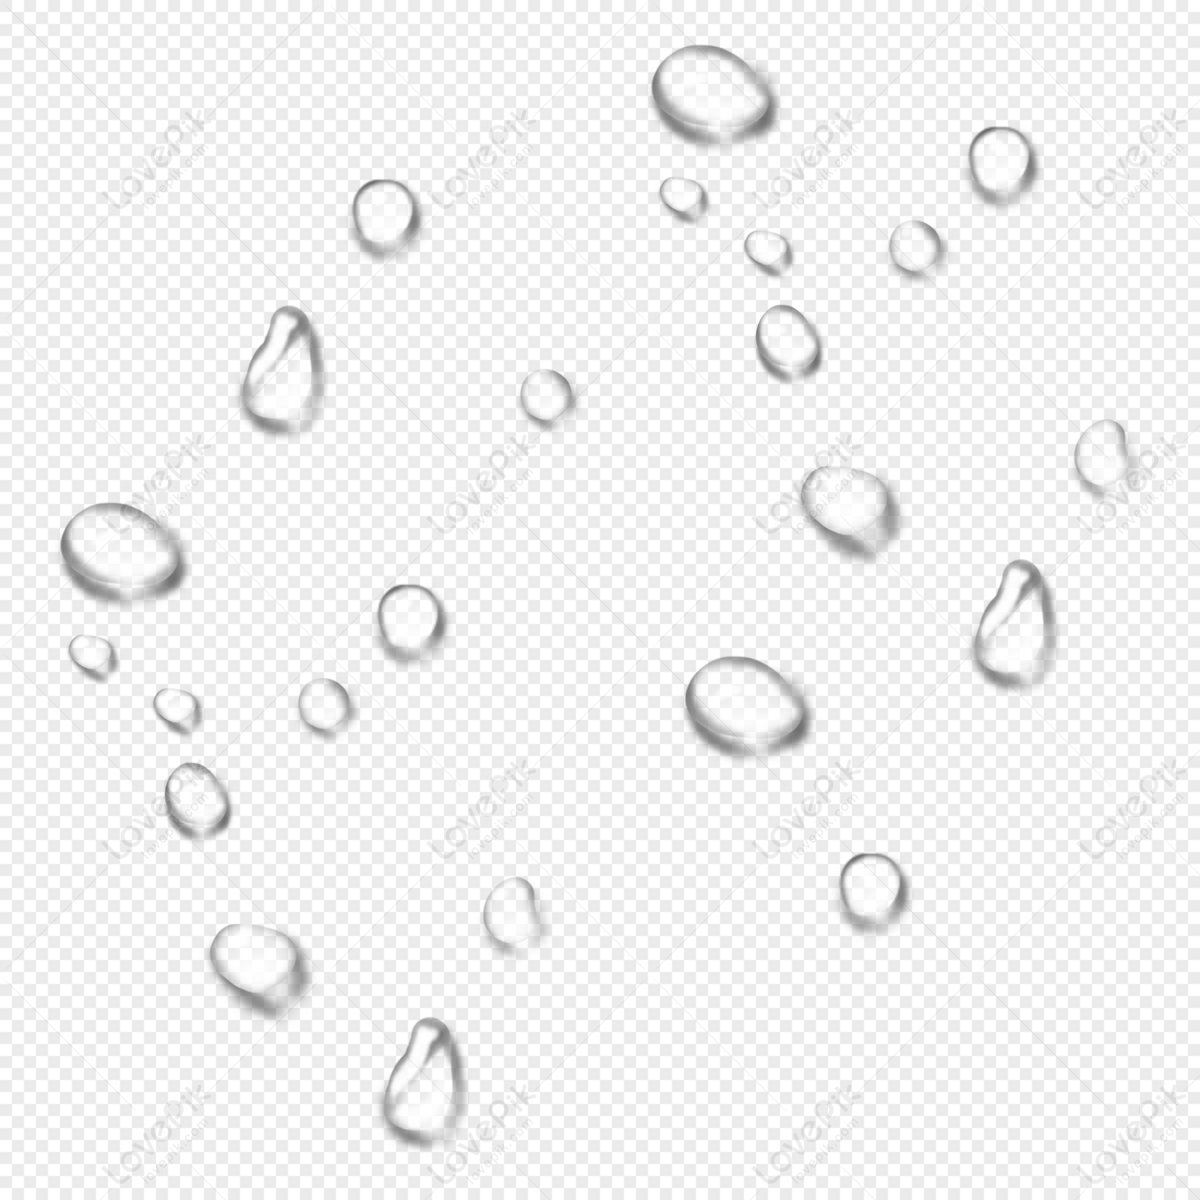 Giọt nước mưa - Mỗi giọt nước mưa đều mang trong mình một câu chuyện đầy ý nghĩa. Hãy chiêm ngưỡng từng giọt nước mưa qua hình ảnh tuyệt vời này và cảm nhận sức sống của từng giọt nước trong những khung cảnh tuyệt đẹp.